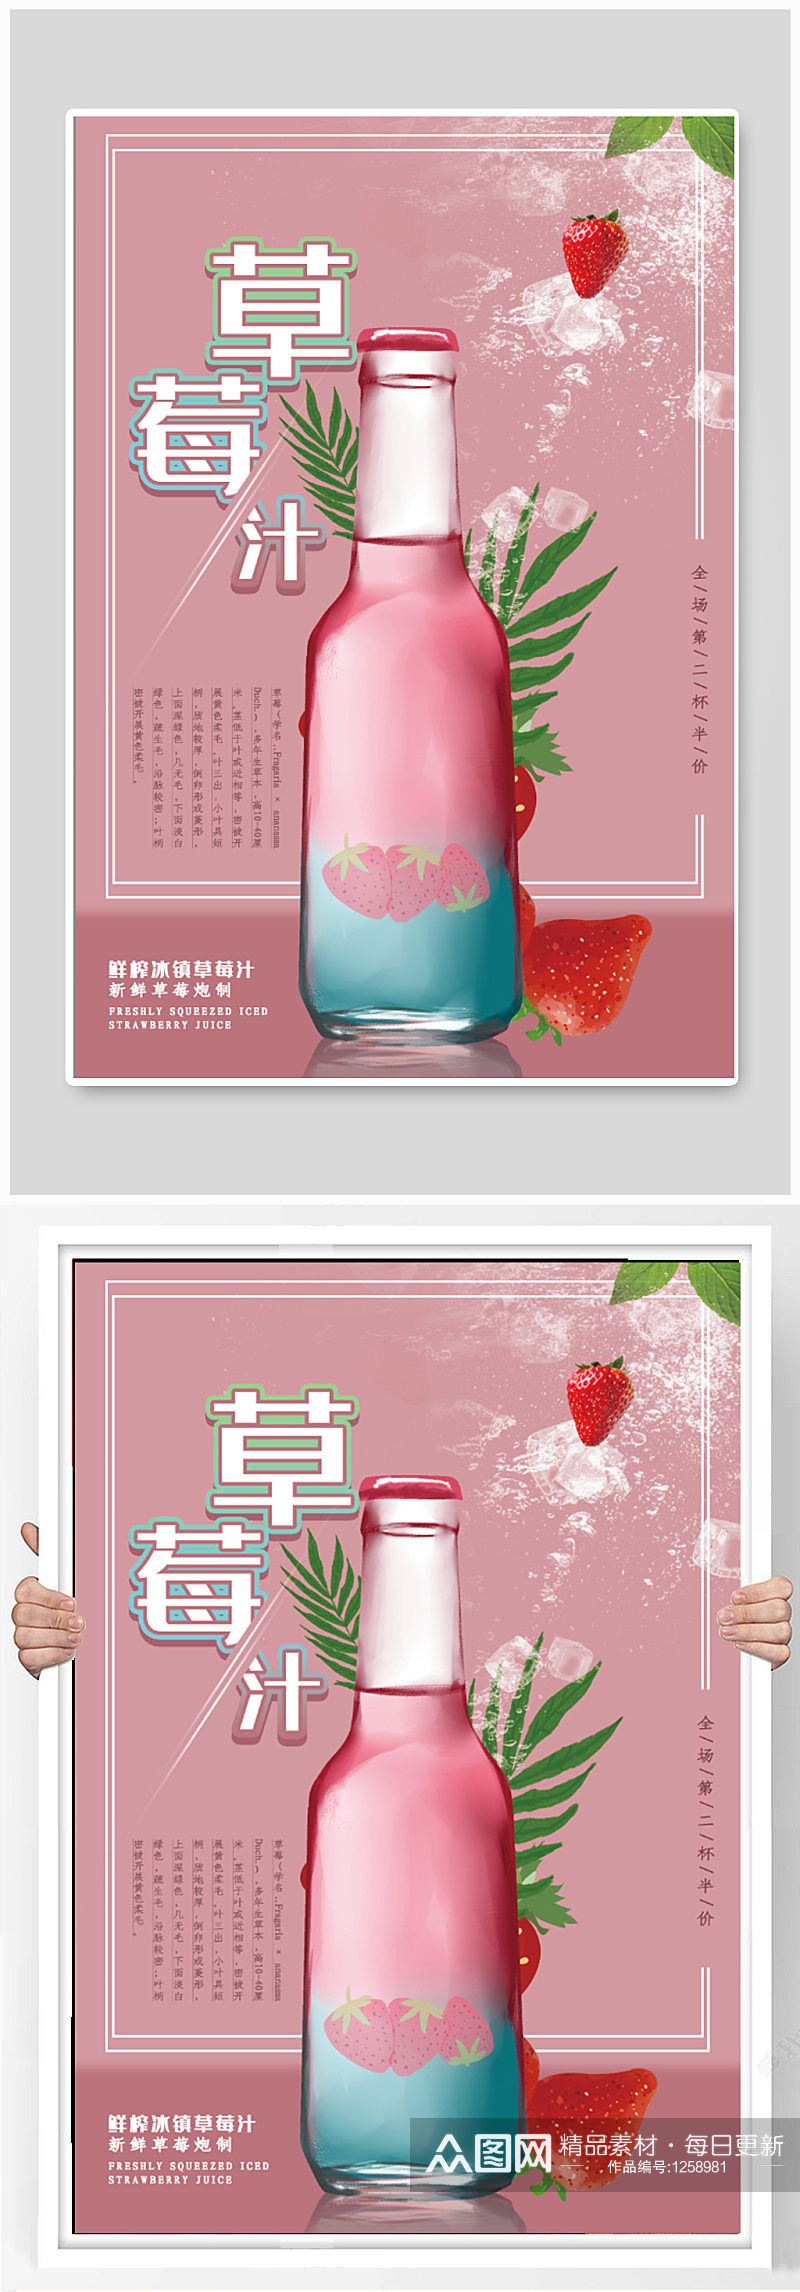 草莓汁饮品店奶茶店海报素材